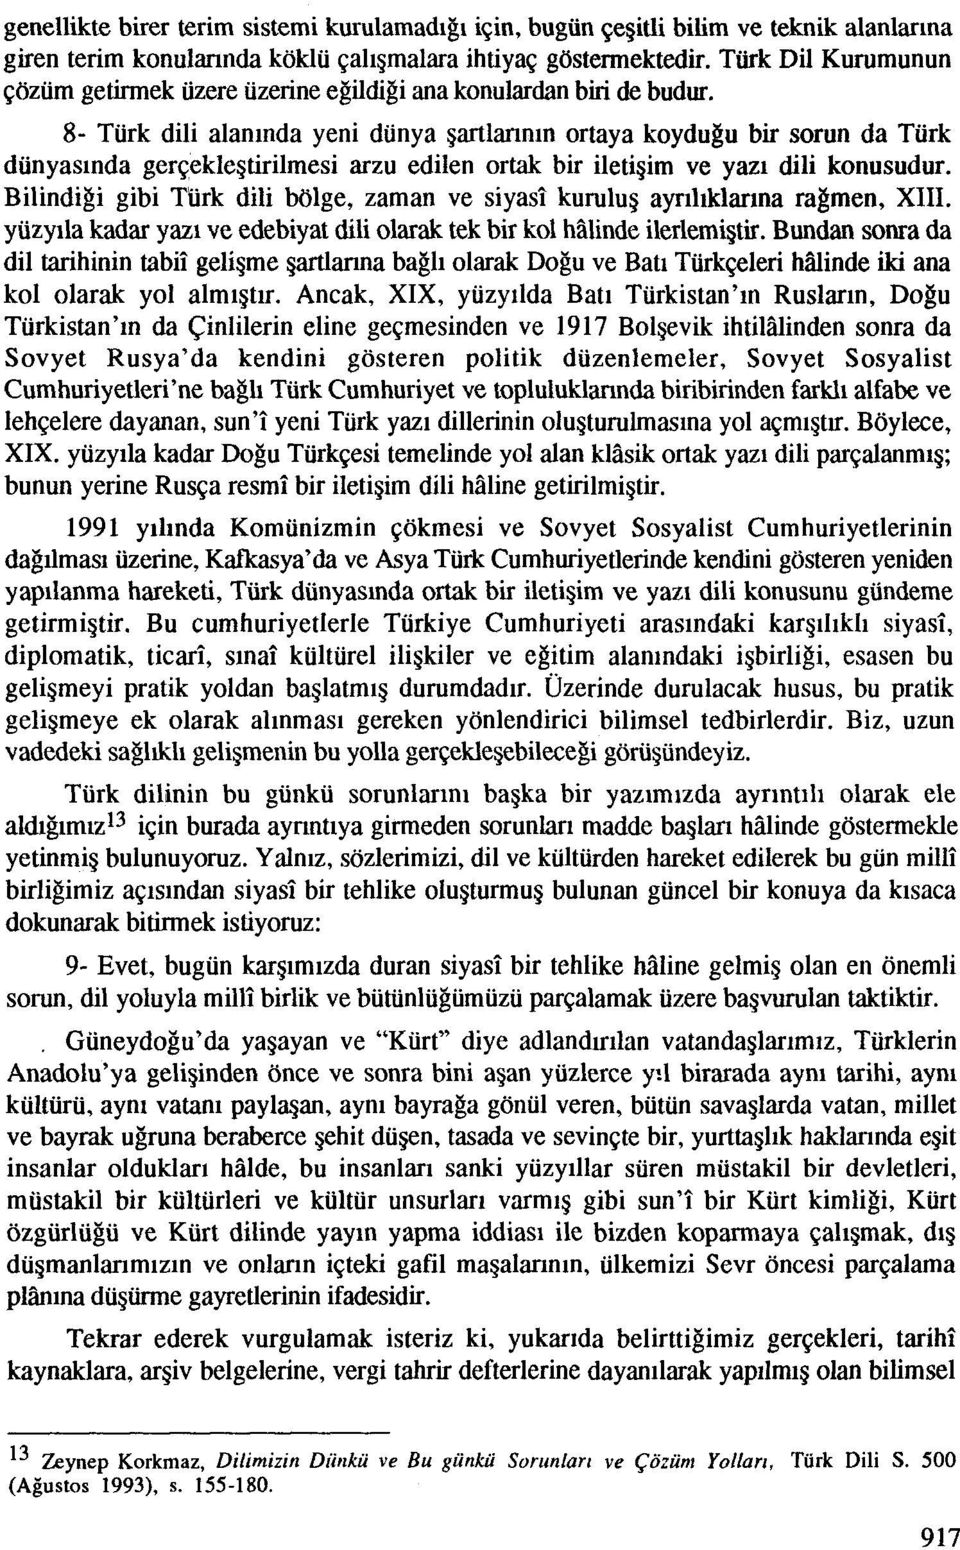 8- Turk dili alaninda yeni dunya gartlmnin ortaya koydugu bir sorun da Turk dunyaslnda gergeklegtirilmesi arzu edilen ortak bir iletigim ve yazi dili konusudur.